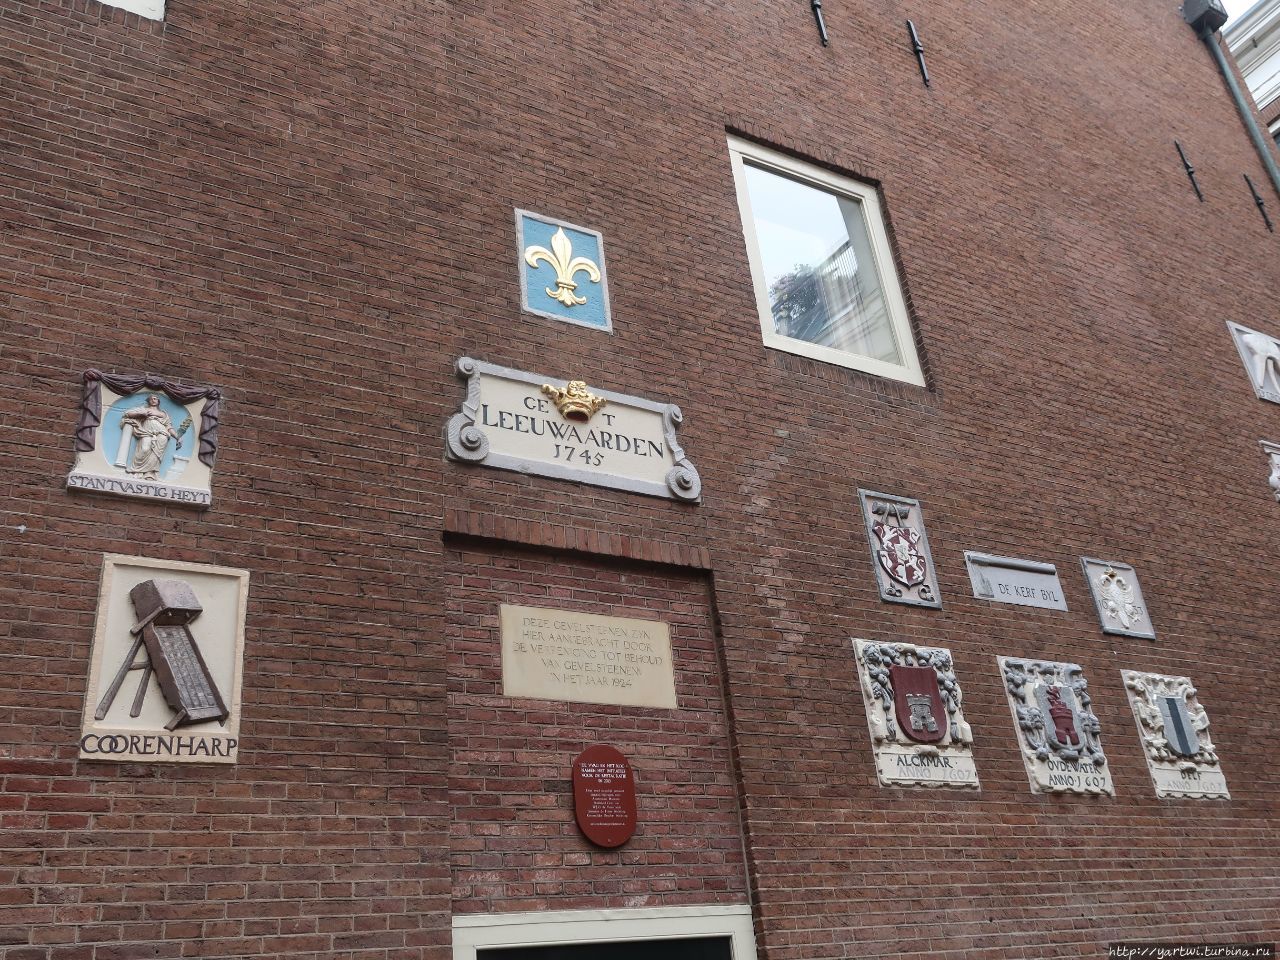 Немного истории: такие знаки в Амстердаме на домах были вместо номеров домов. Амстердам, Нидерланды